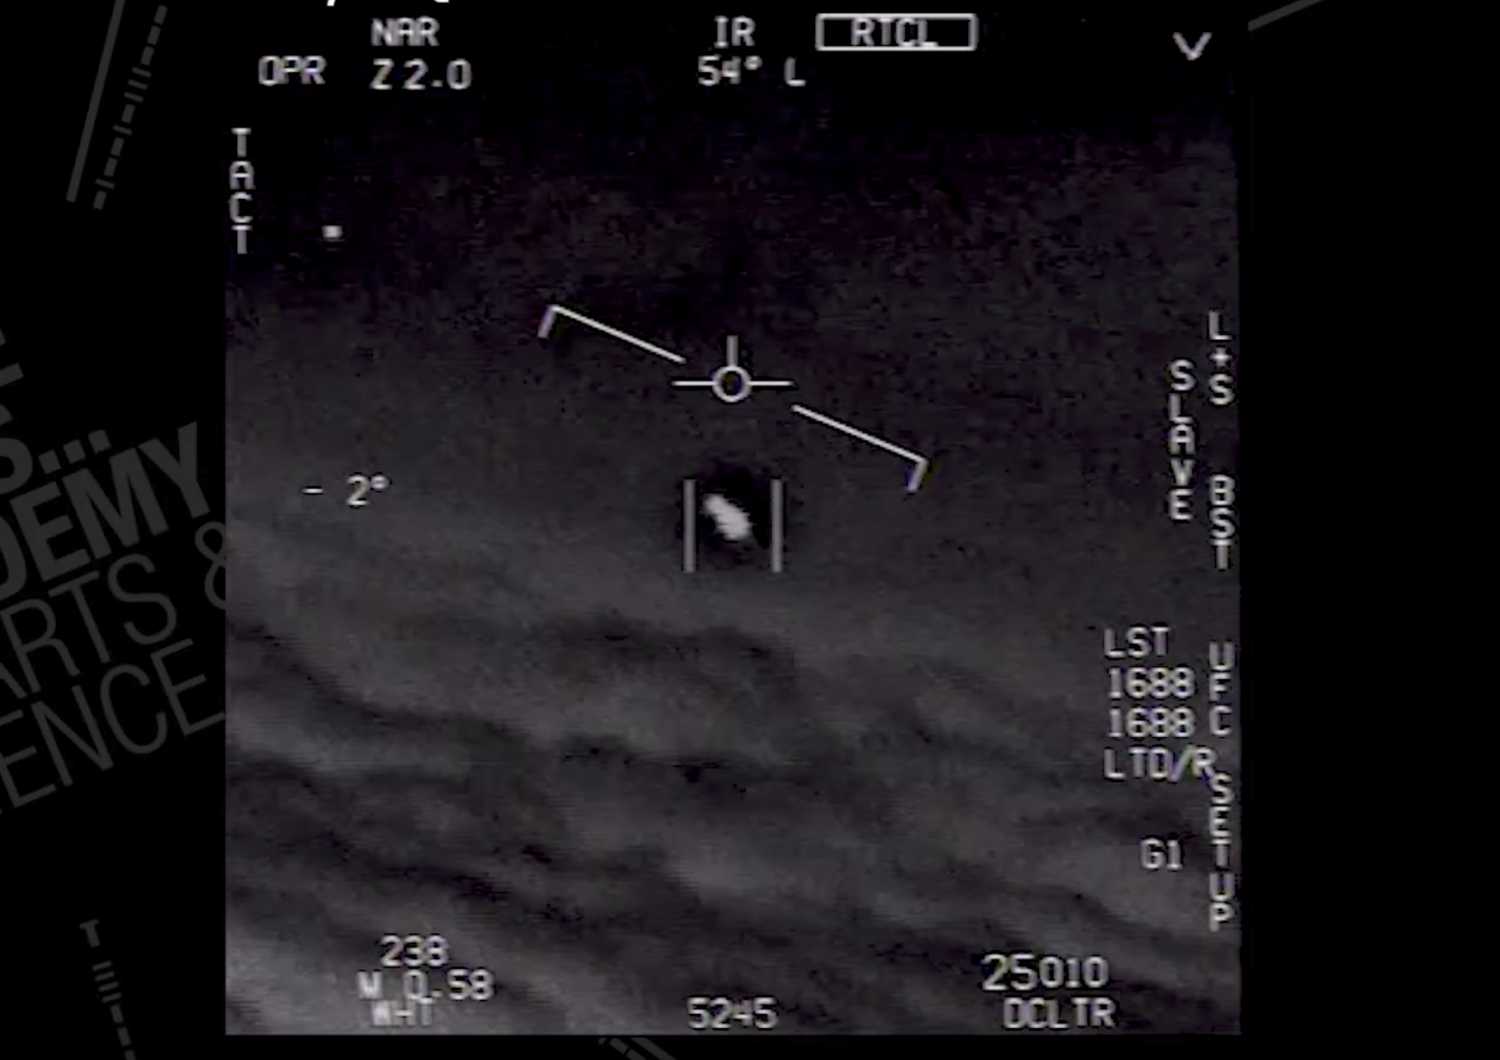 marina usa conferma avvistamenti ufo